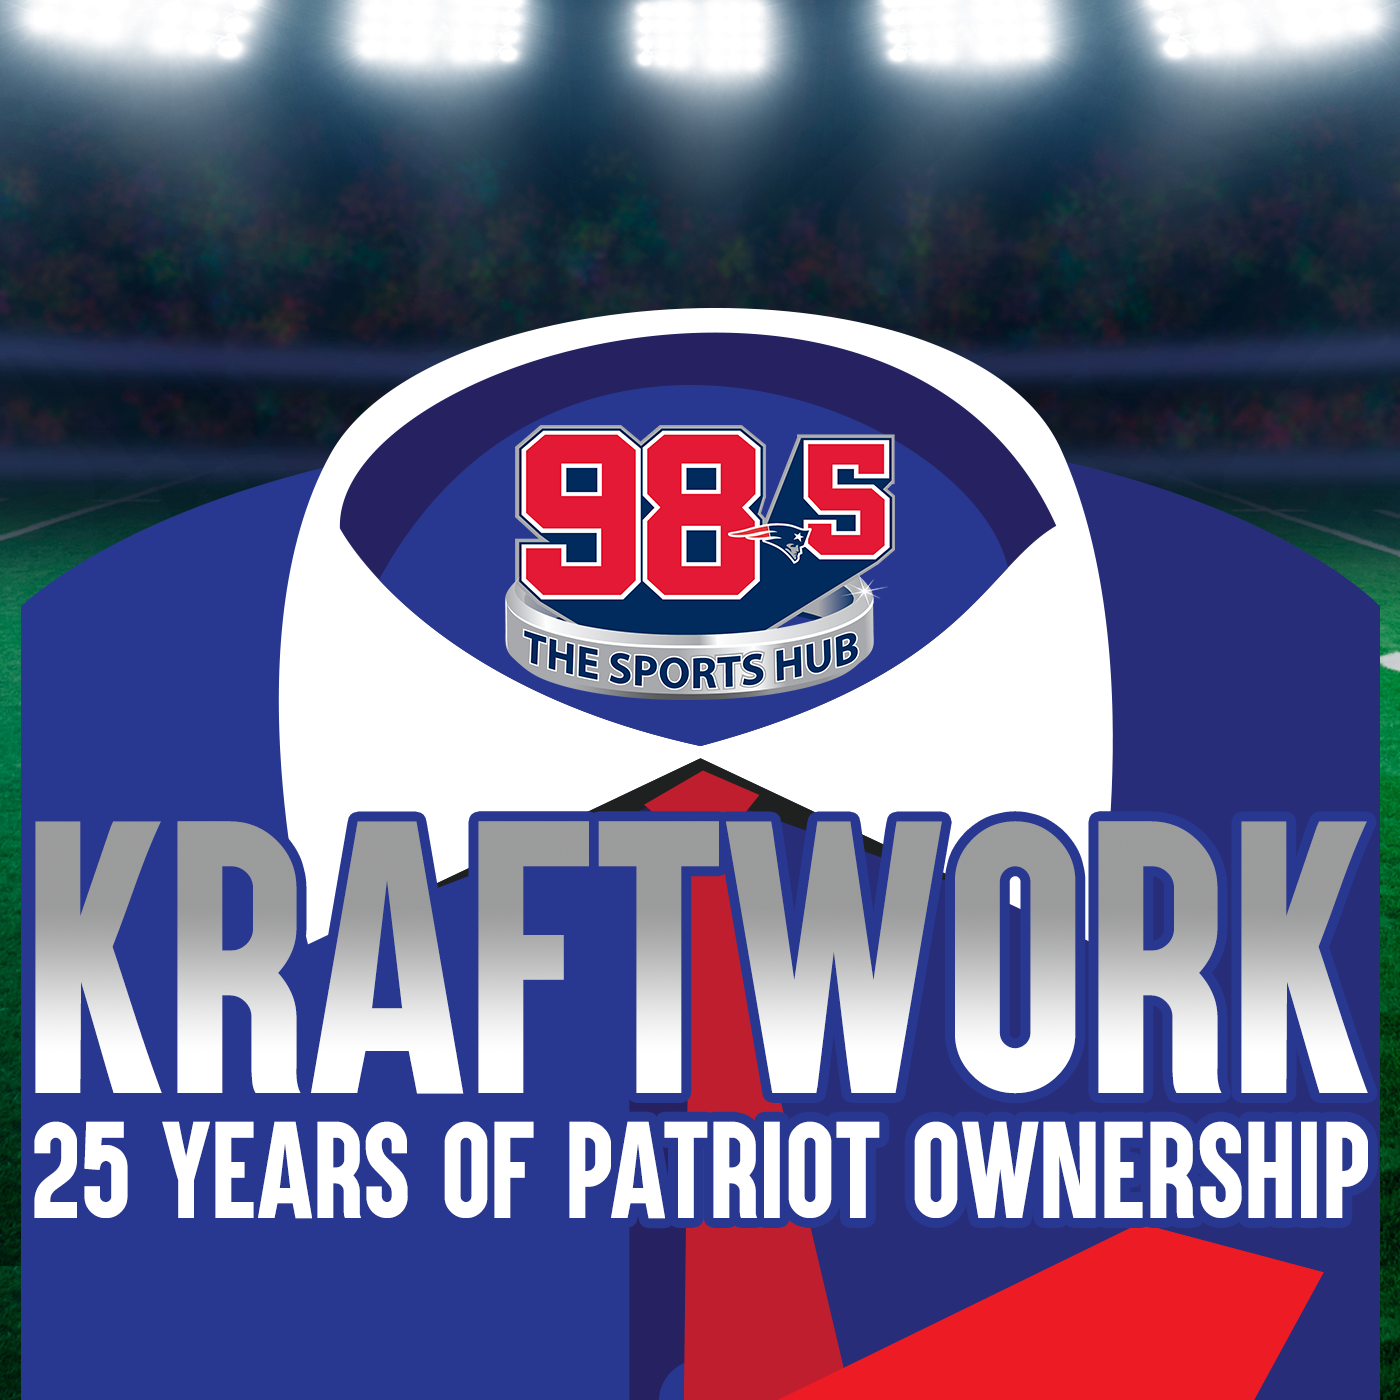 Kraftwork: Episode 5 - Completing the Sale